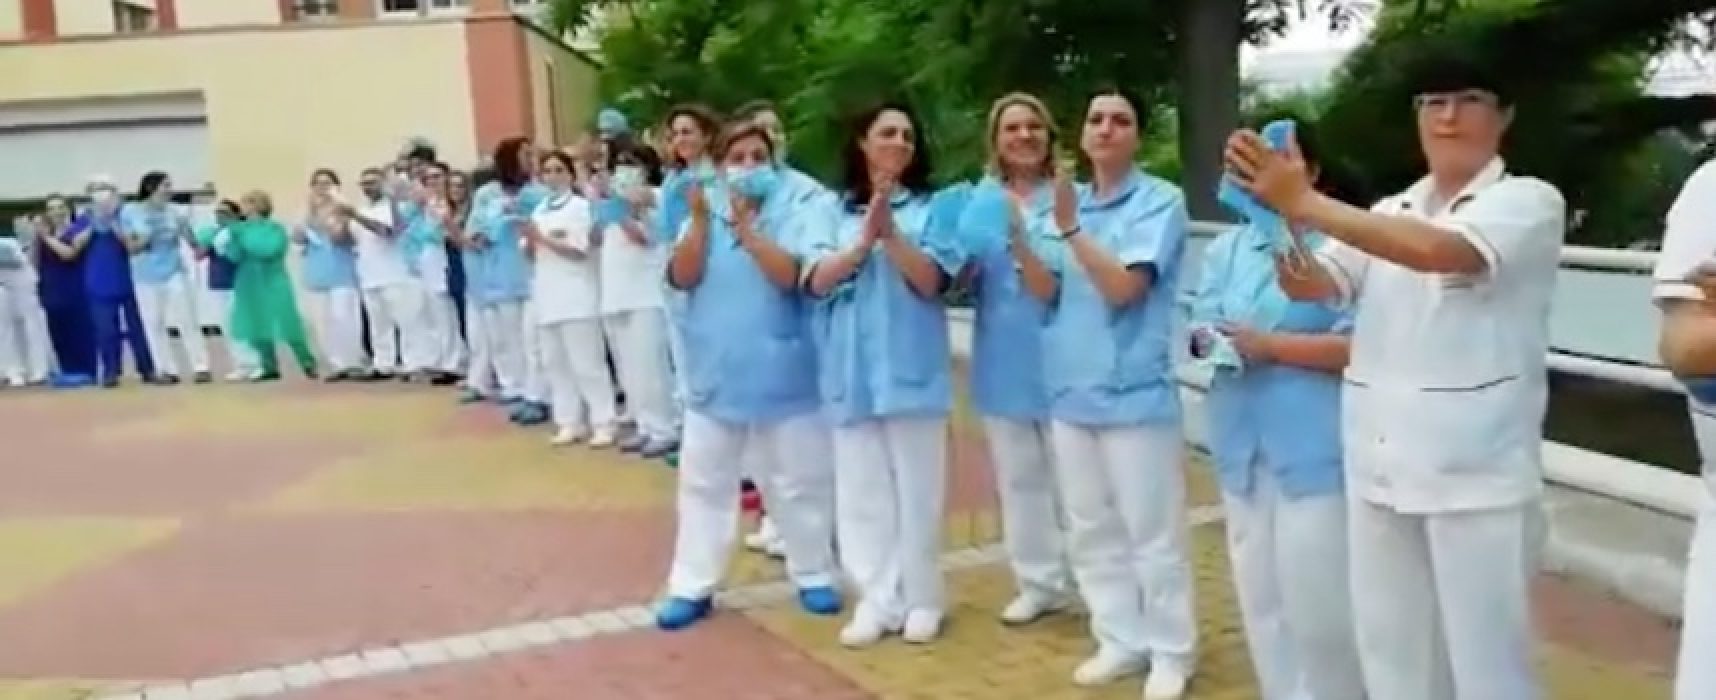 L’ospedale di Bisceglie riprende la sua attività: l’applauso degli operatori / VIDEO